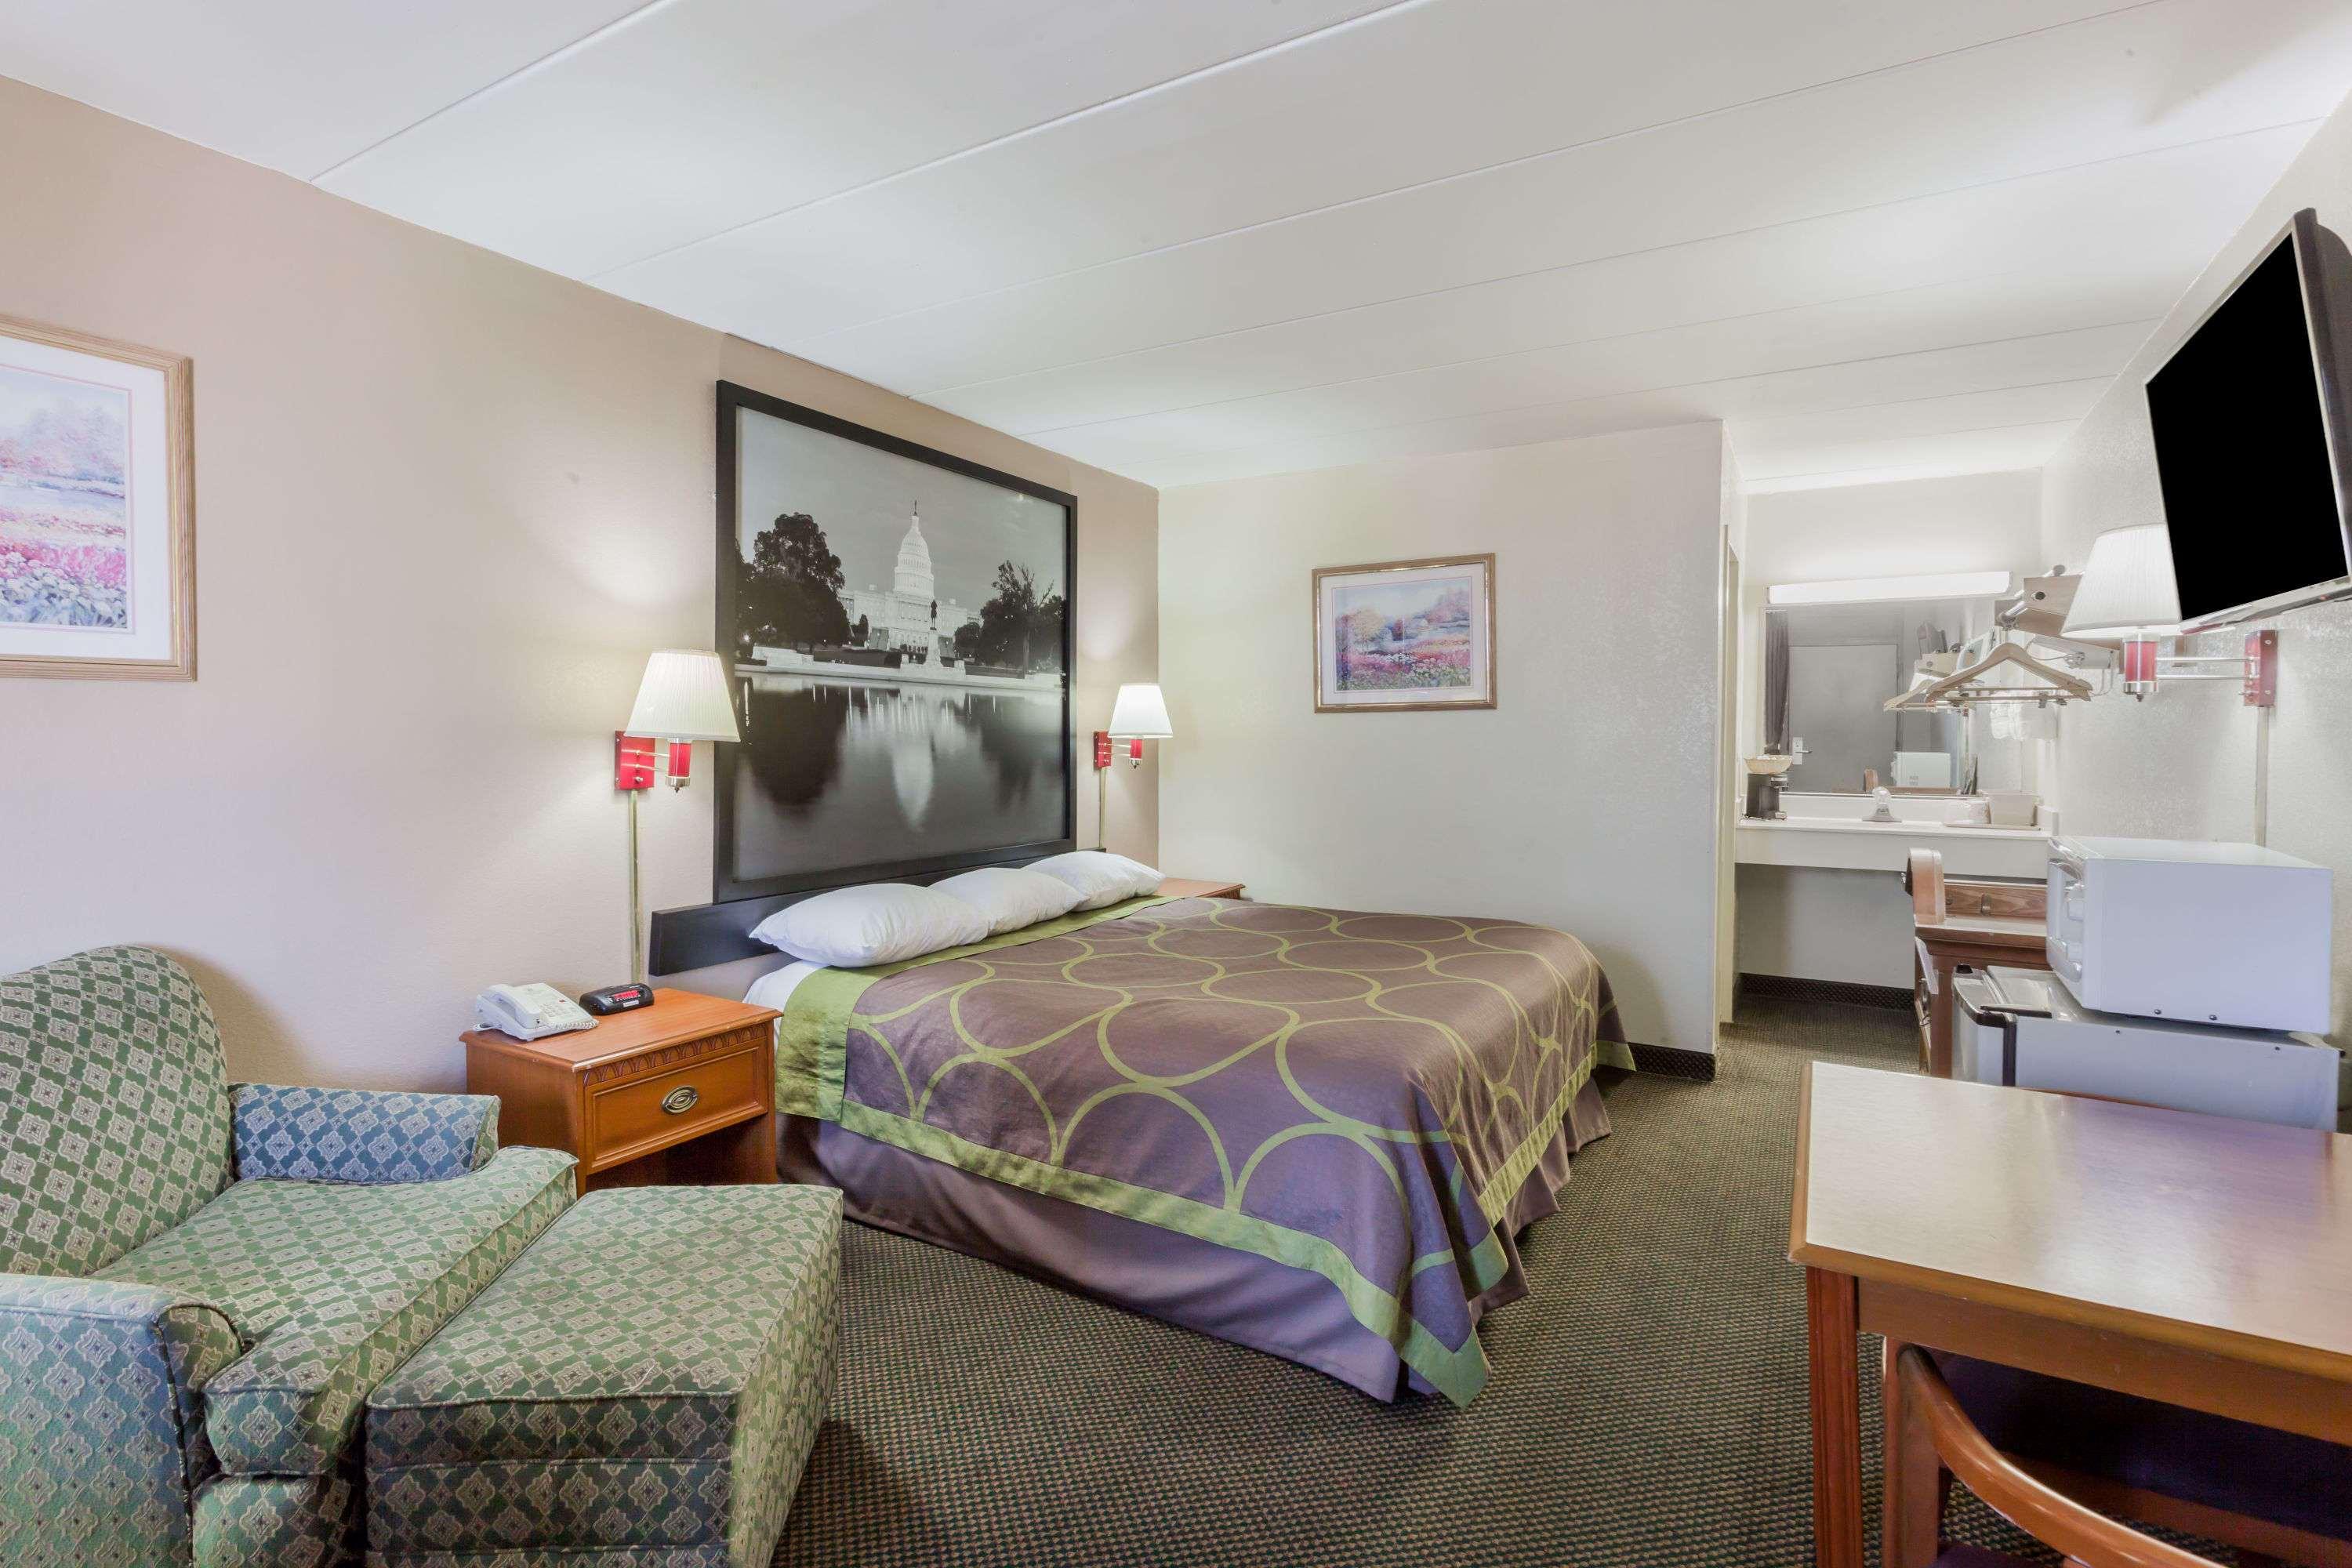 عکس های Hotel Super 8 Motel - Manasses/Rt 28/Wash D.C.